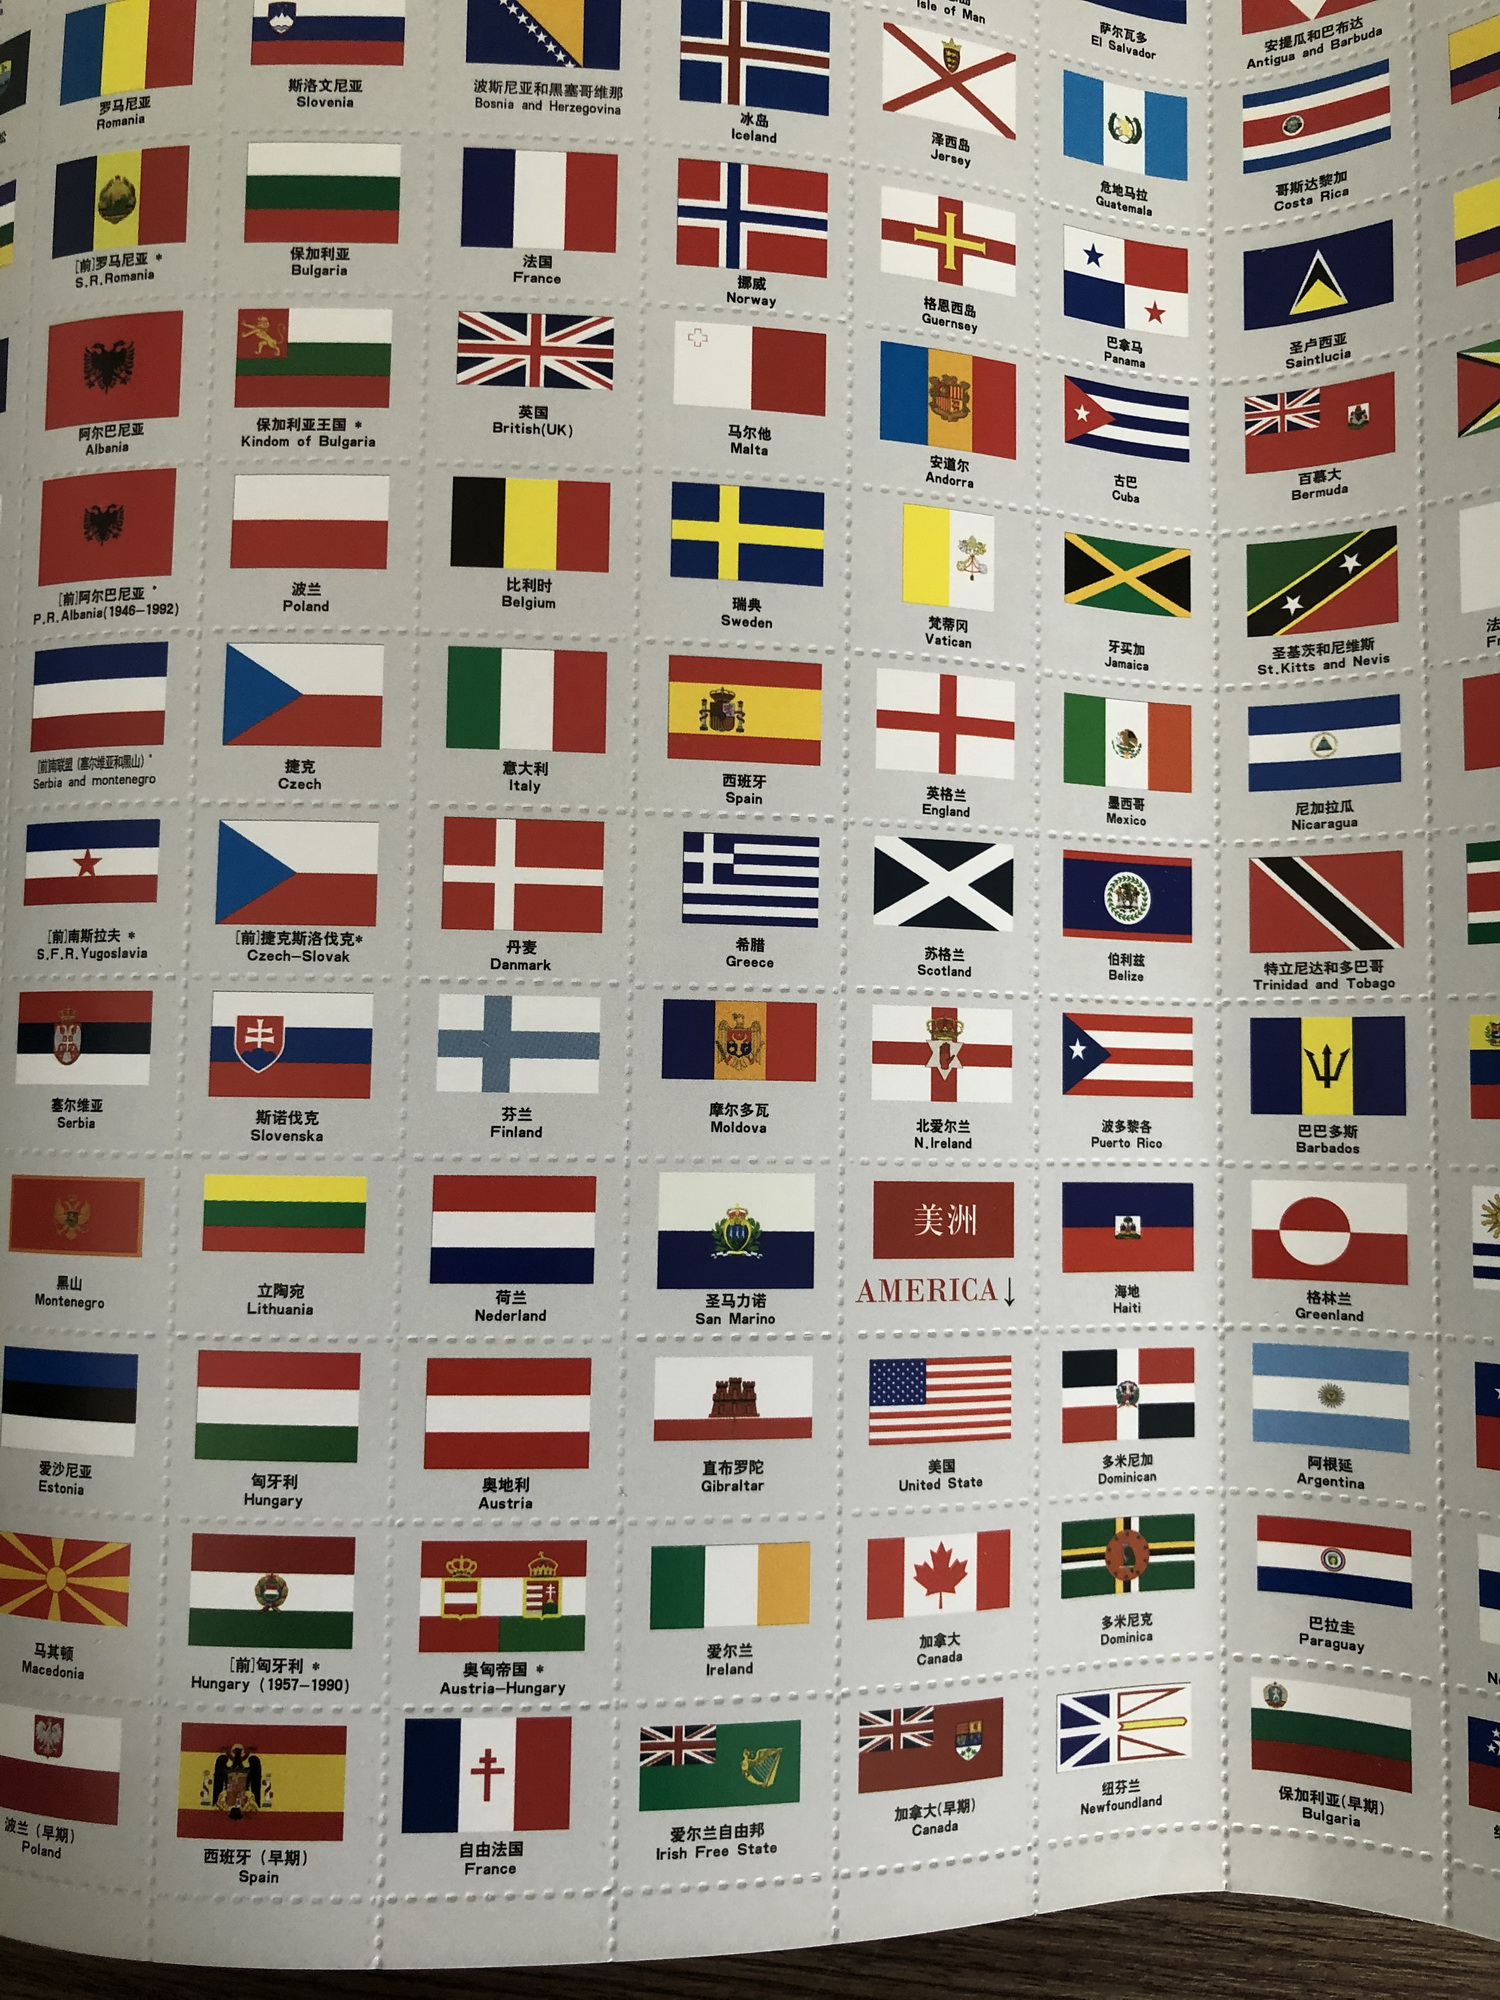 Bạn muốn tìm hiểu về cờ quốc gia của các quốc gia trên toàn thế giới? Đây là cơ hội tuyệt vời để khám phá những lá cờ độc đáo và ý nghĩa của chúng. Hãy cùng tìm hiểu về câu chuyện đằng sau mỗi quốc kỳ trong năm 2024 này.